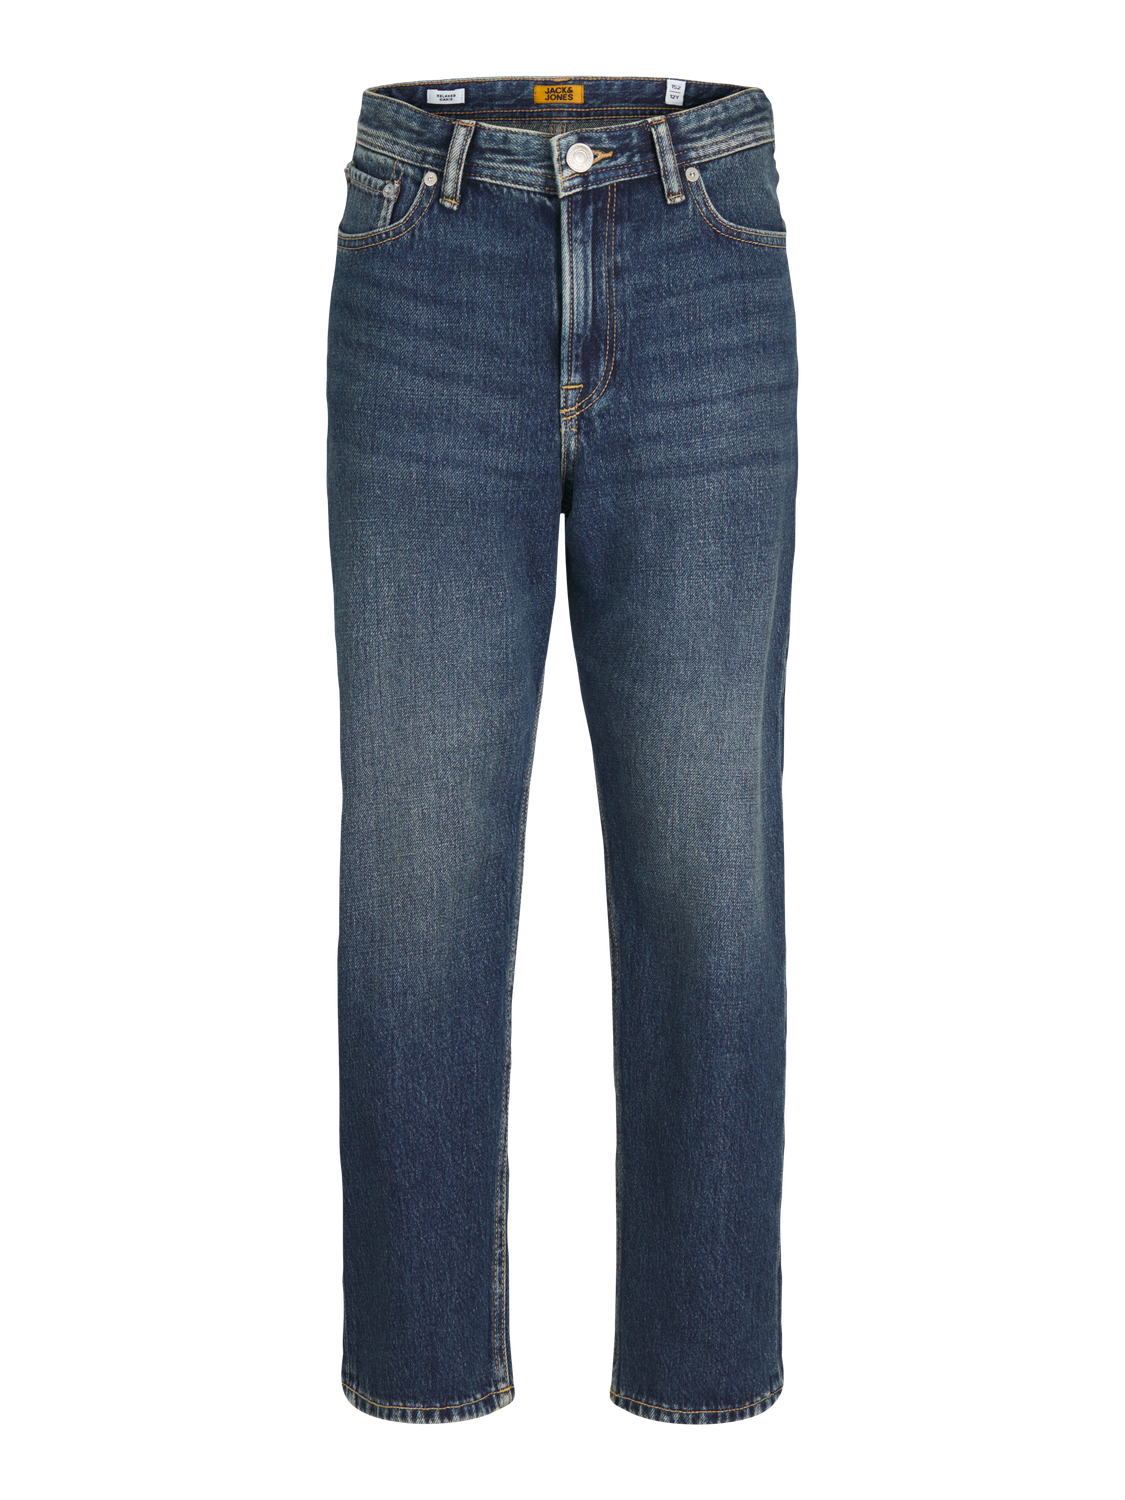 Jack & Jones JJICHRIS JJORIGINAL MF 993 Relaxed Fit Jeans For boys -Blue Denim - 12259292